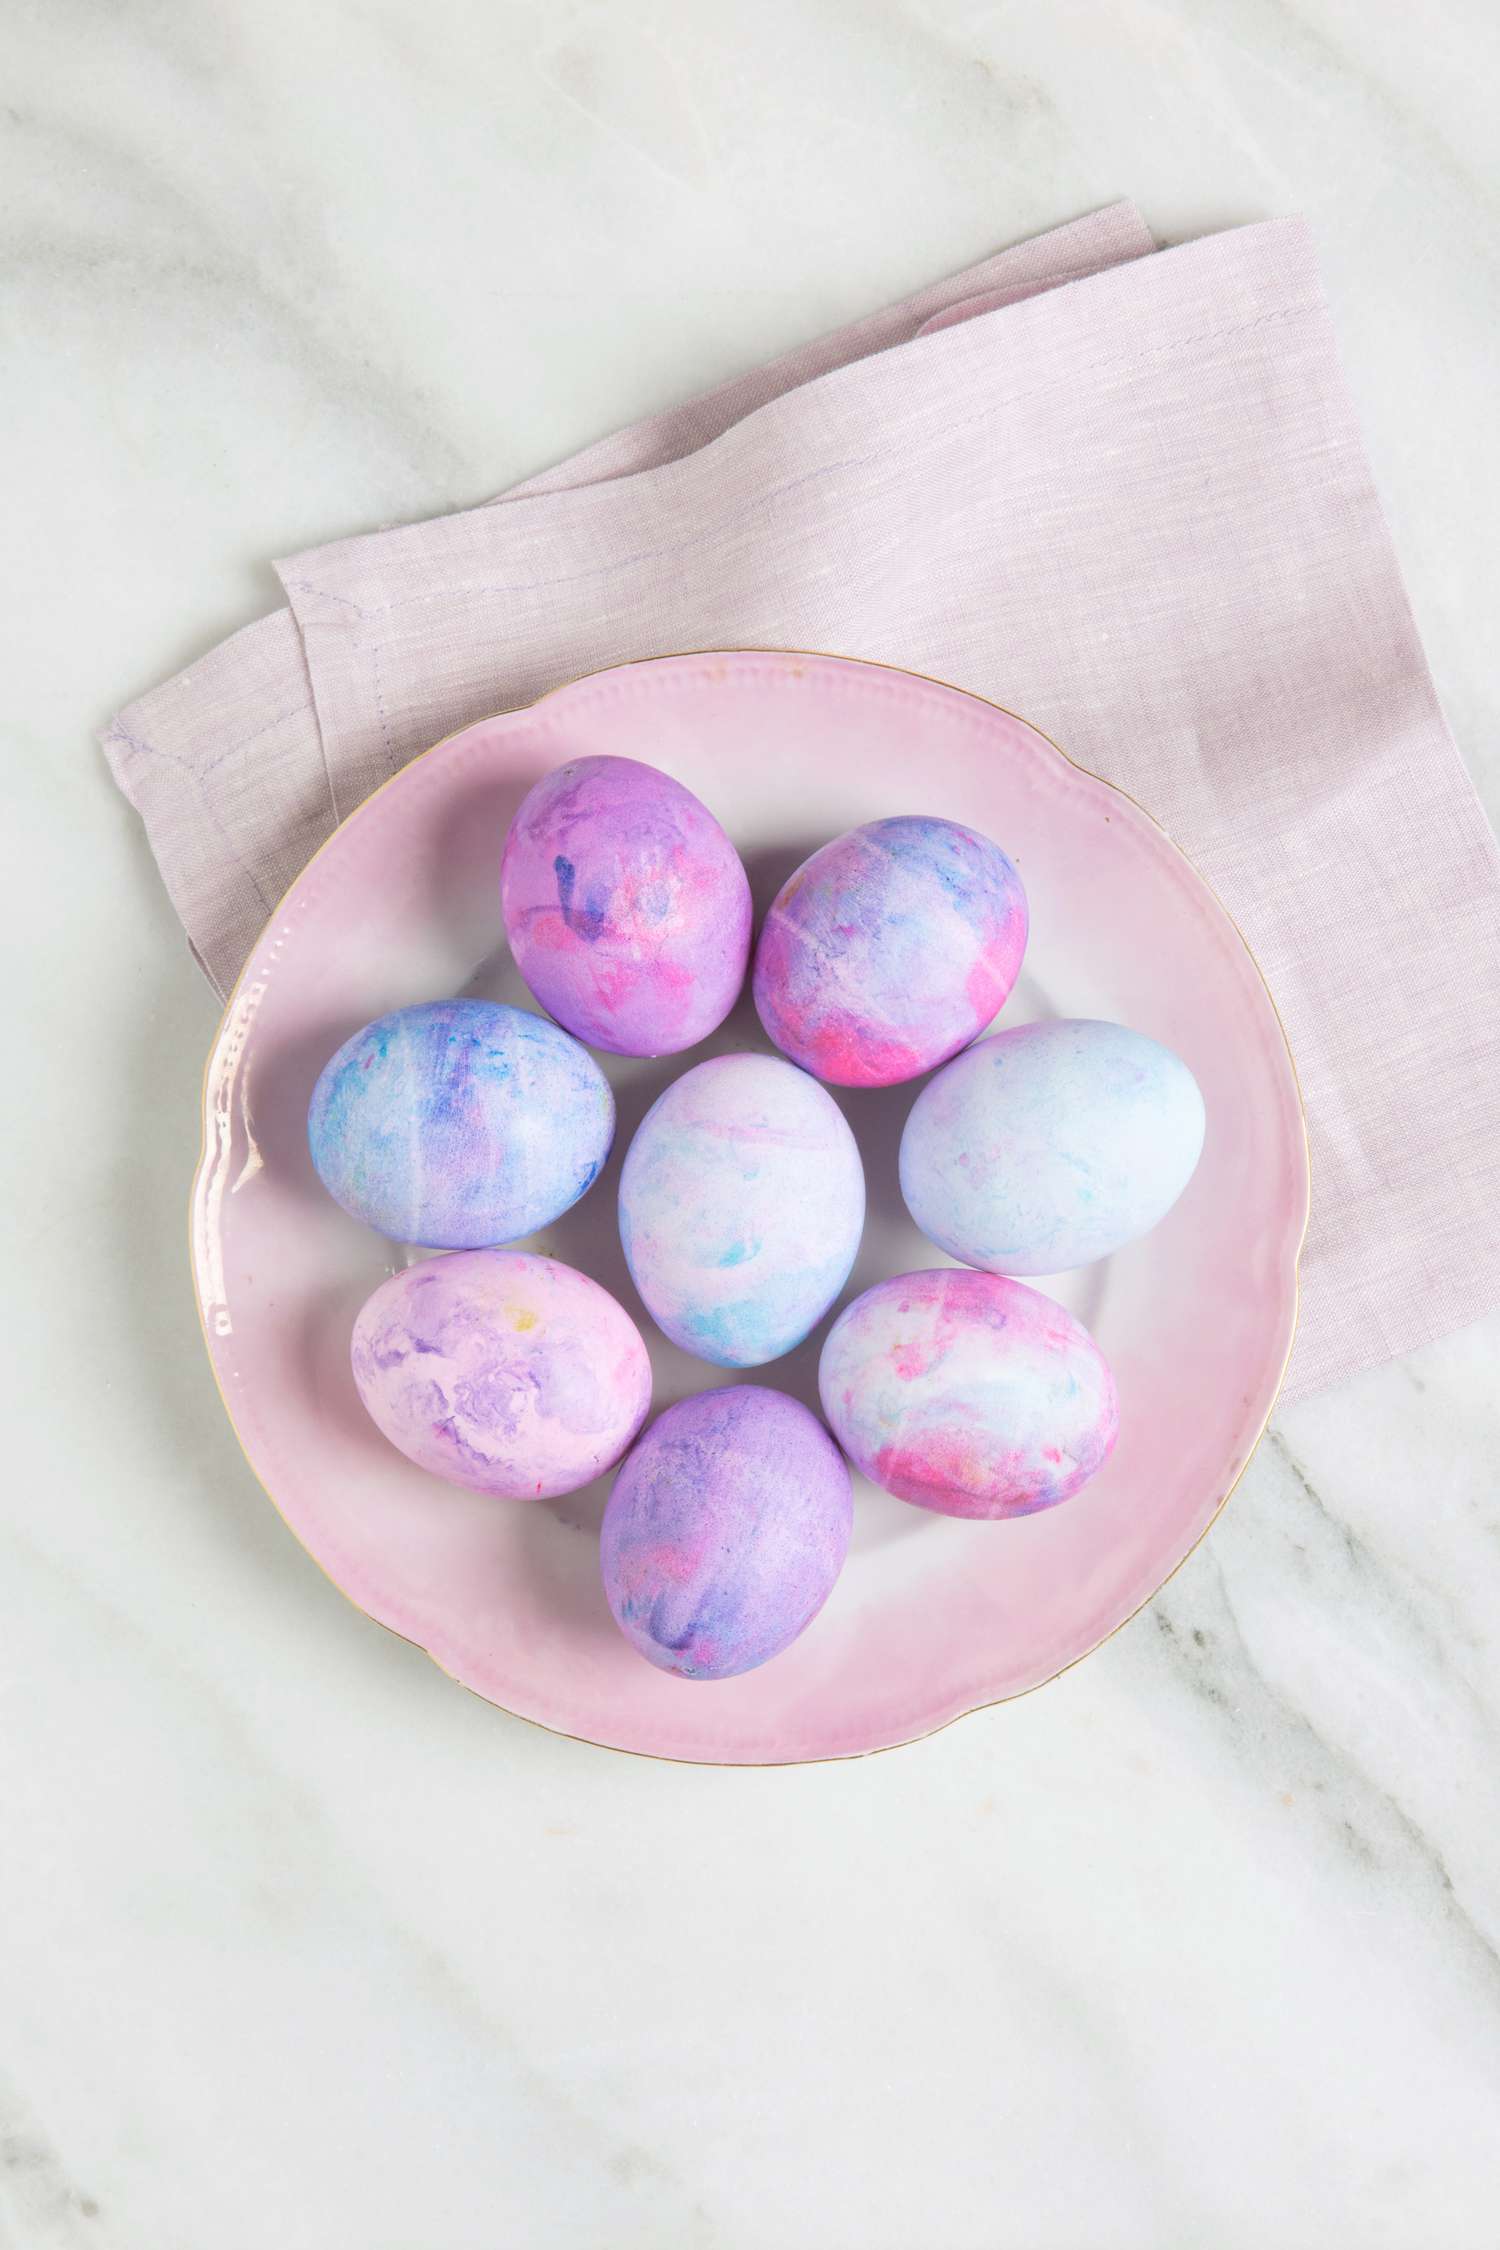 Dyed Easter Eggs Using Shaving Cream